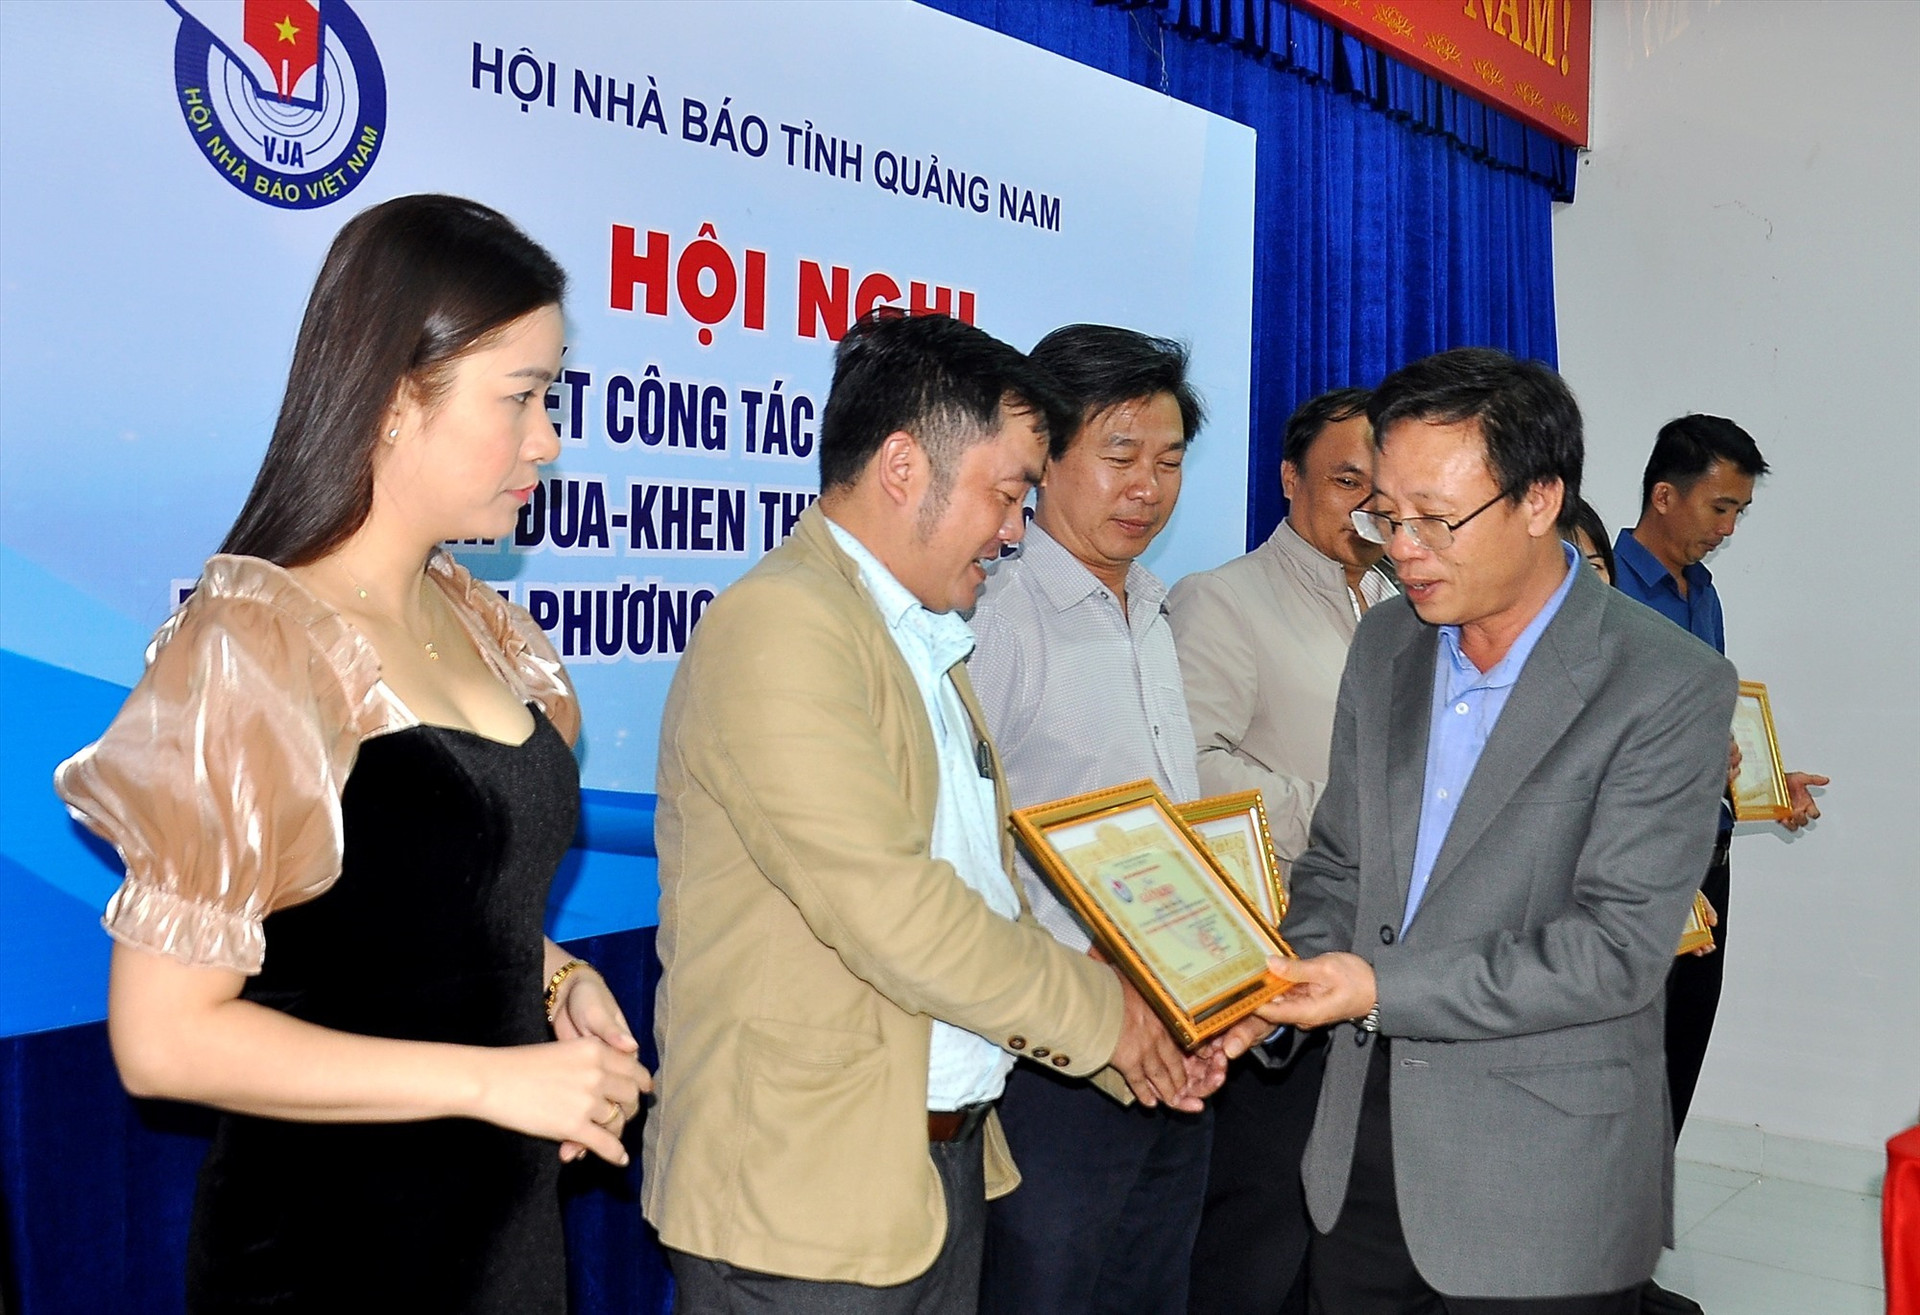 Nhà báo Lê Văn Nhi - Chủ tịch Hội Nhà báo tỉnh tặng giấy khen các hội viên có thành tích xuất sắc trong công tác hội năm 2019. Ảnh: VINH ANH